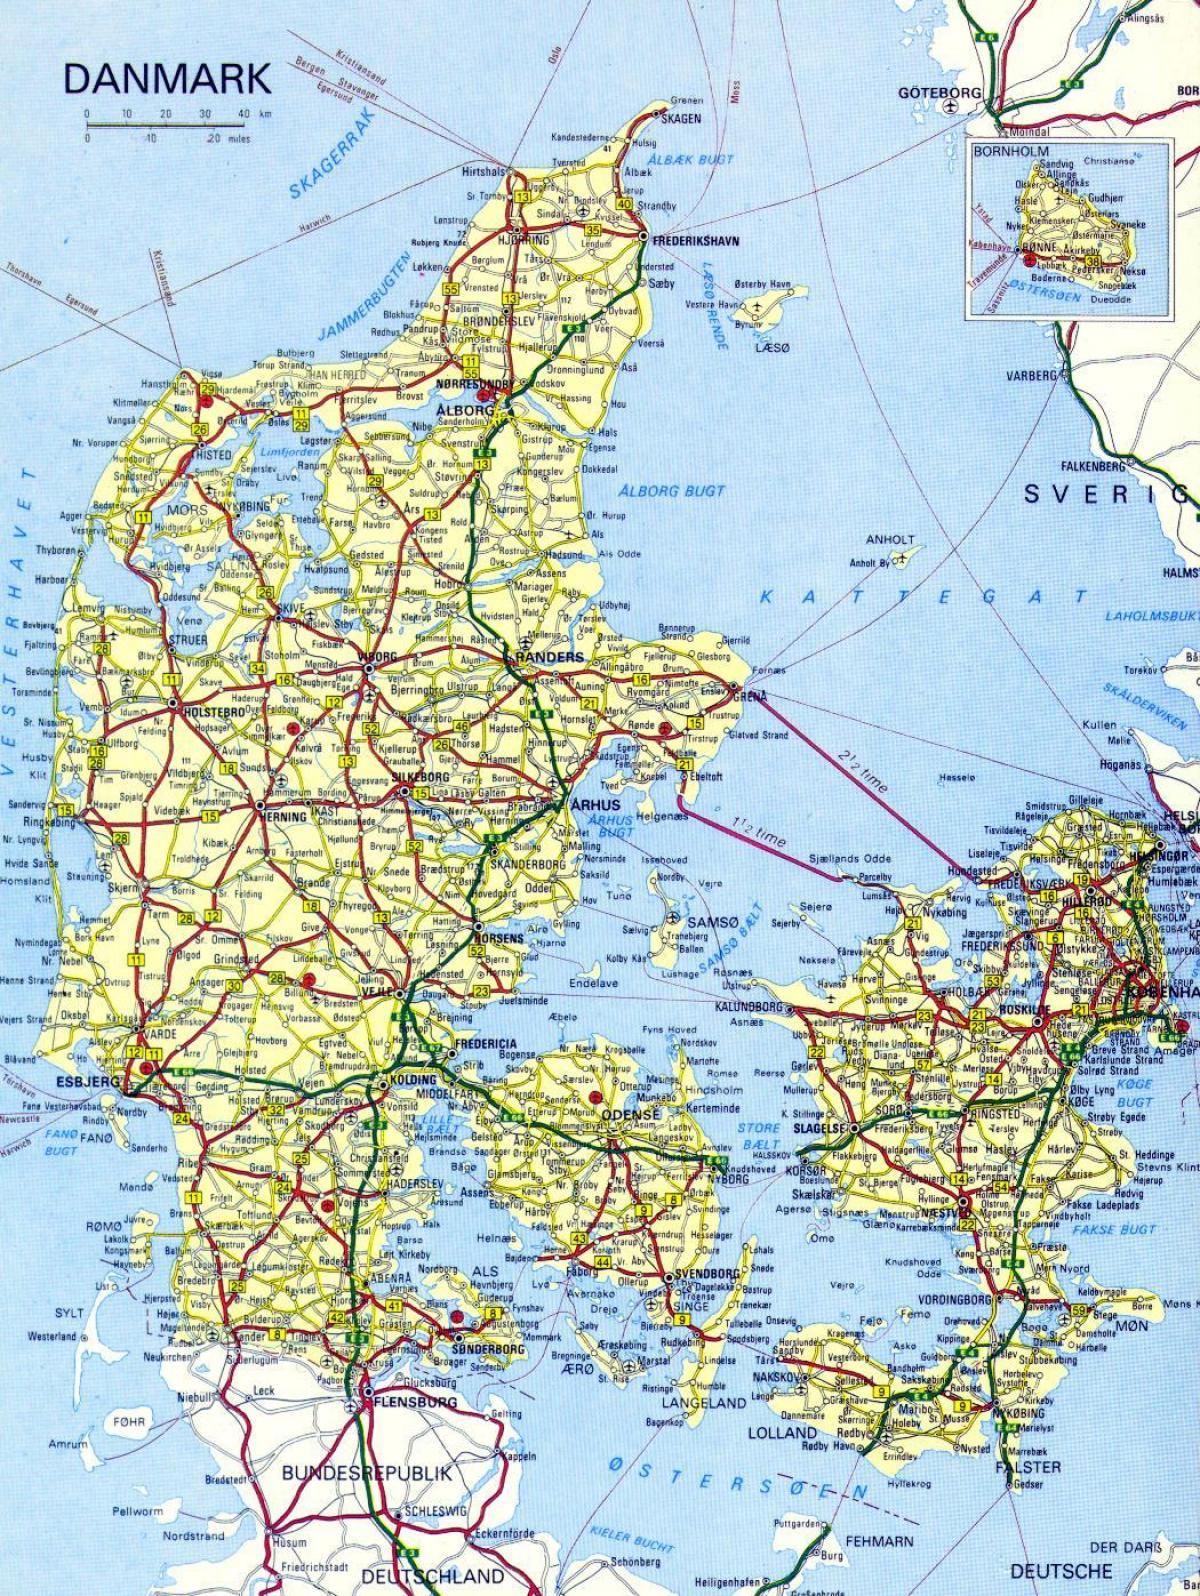 मानचित्र की सड़क डेनमार्क